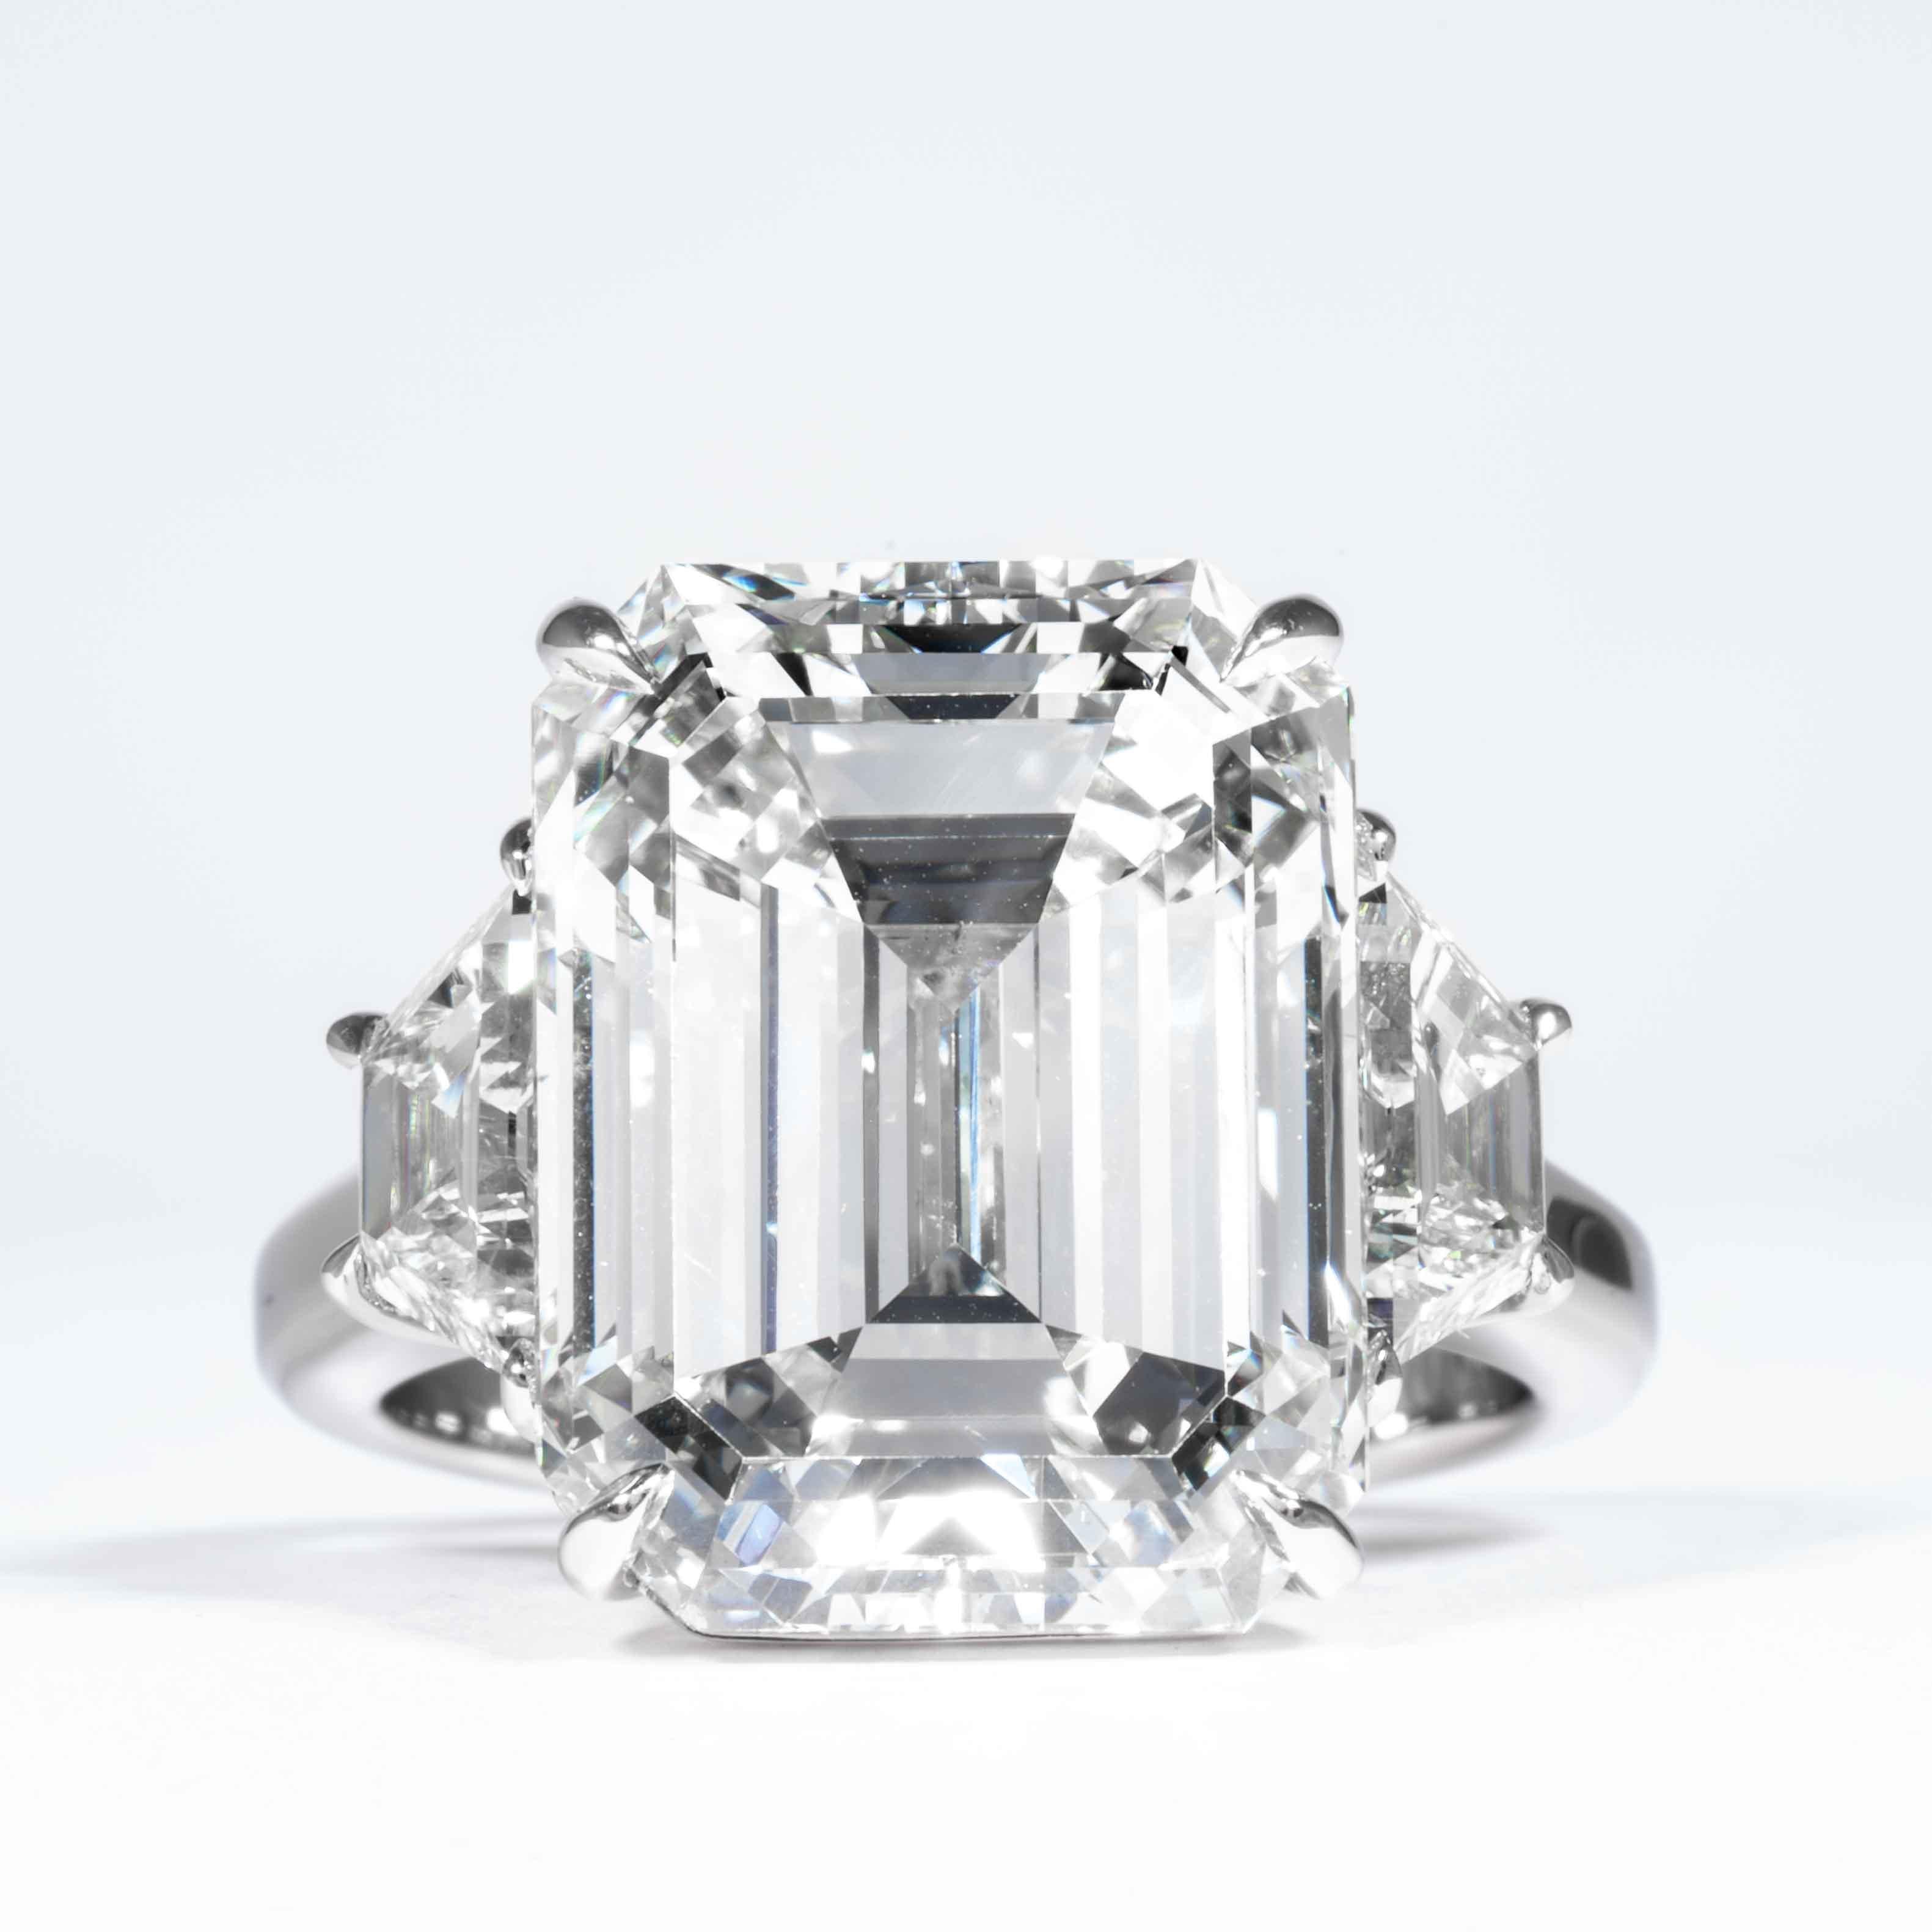 Cette bague à trois pierres est proposée par Shreve, Crump & Low. Ce diamant émeraude de 13,26 carats, certifié GIA K VS2, mesurant 15,30 x 11,64 x 8,31 mm, est serti sur mesure dans une bague à trois pierres en platine fabriquée à la main par